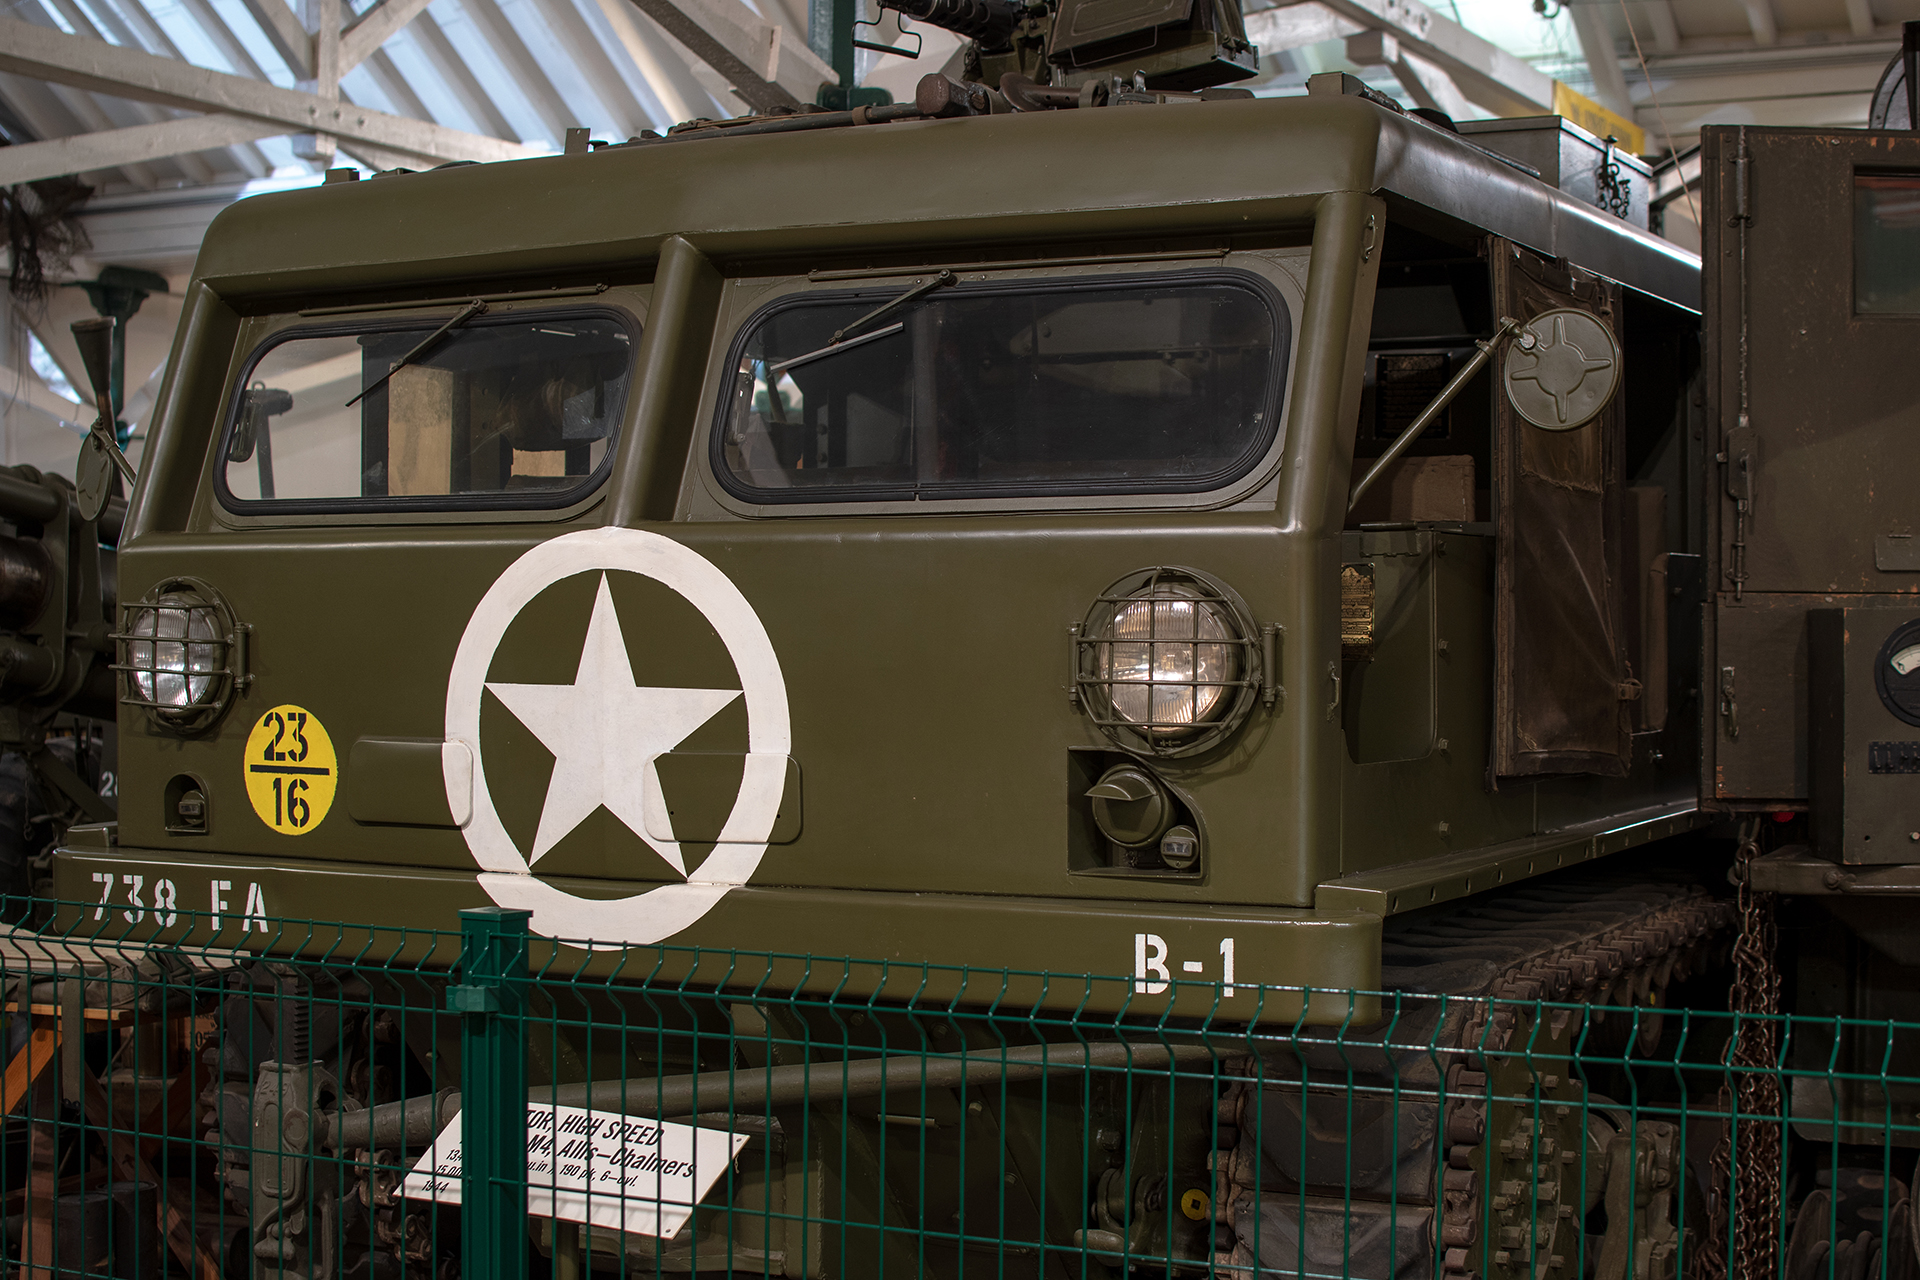 Allis-Chalmers M4 chenillé 1944 cabin - Musée National d'Histoire Militaire, Diekirch